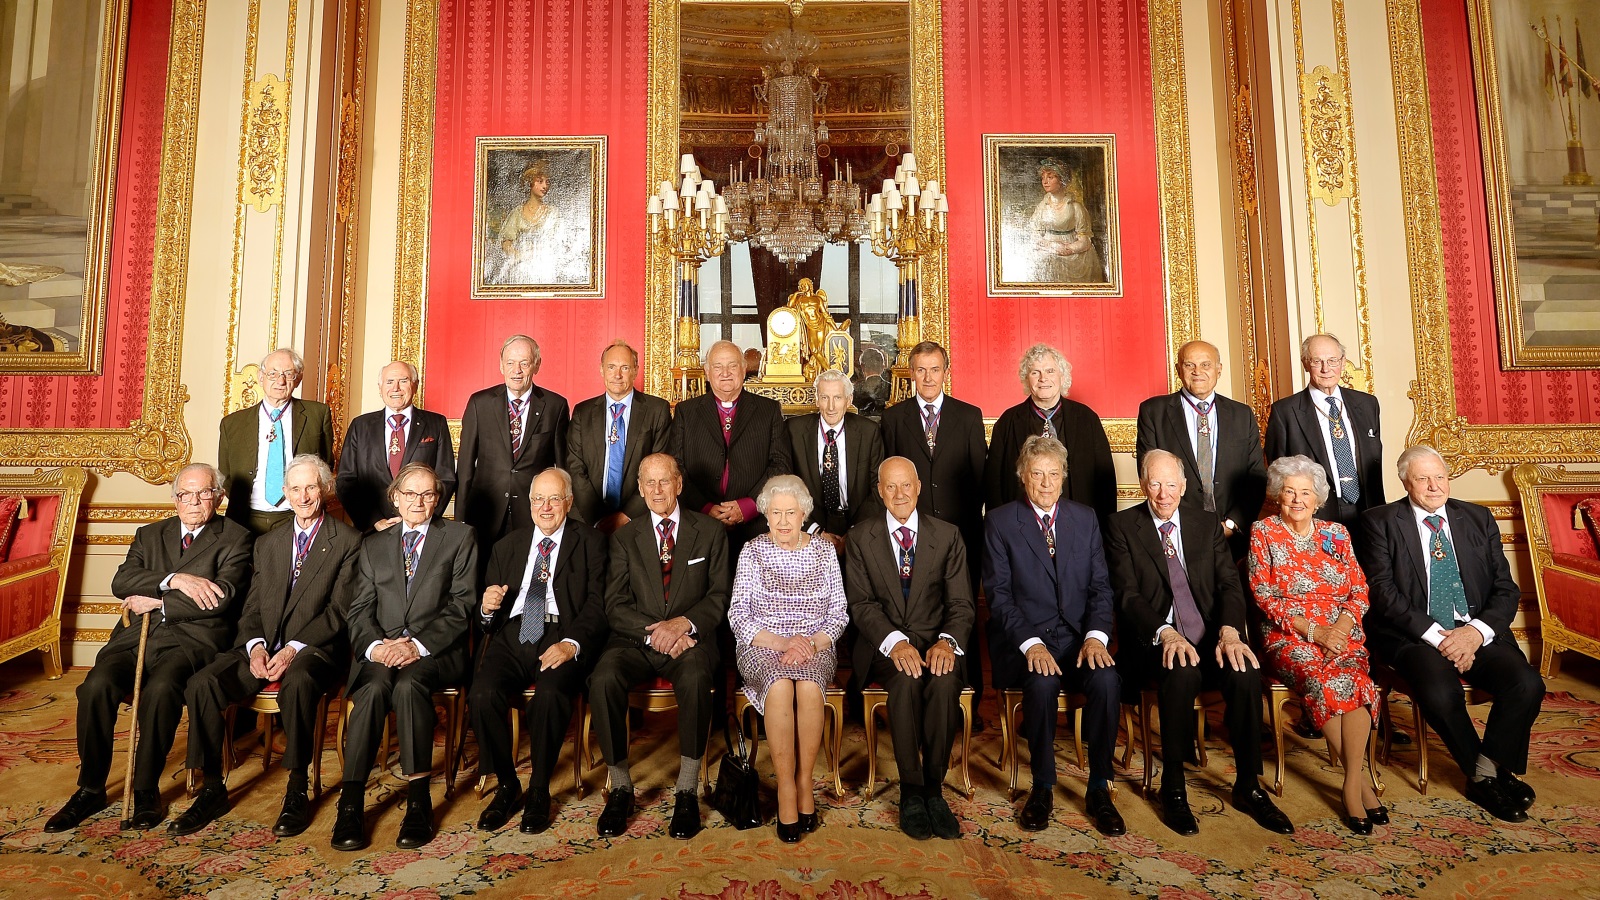 صورة جماعية التقطت في 2015 للحاصلين على وسام الاستحقاق تتوسطهم الملكة إليزابيث، وعطية هو الرابع من اليسار في الصف الأول (غيتي)